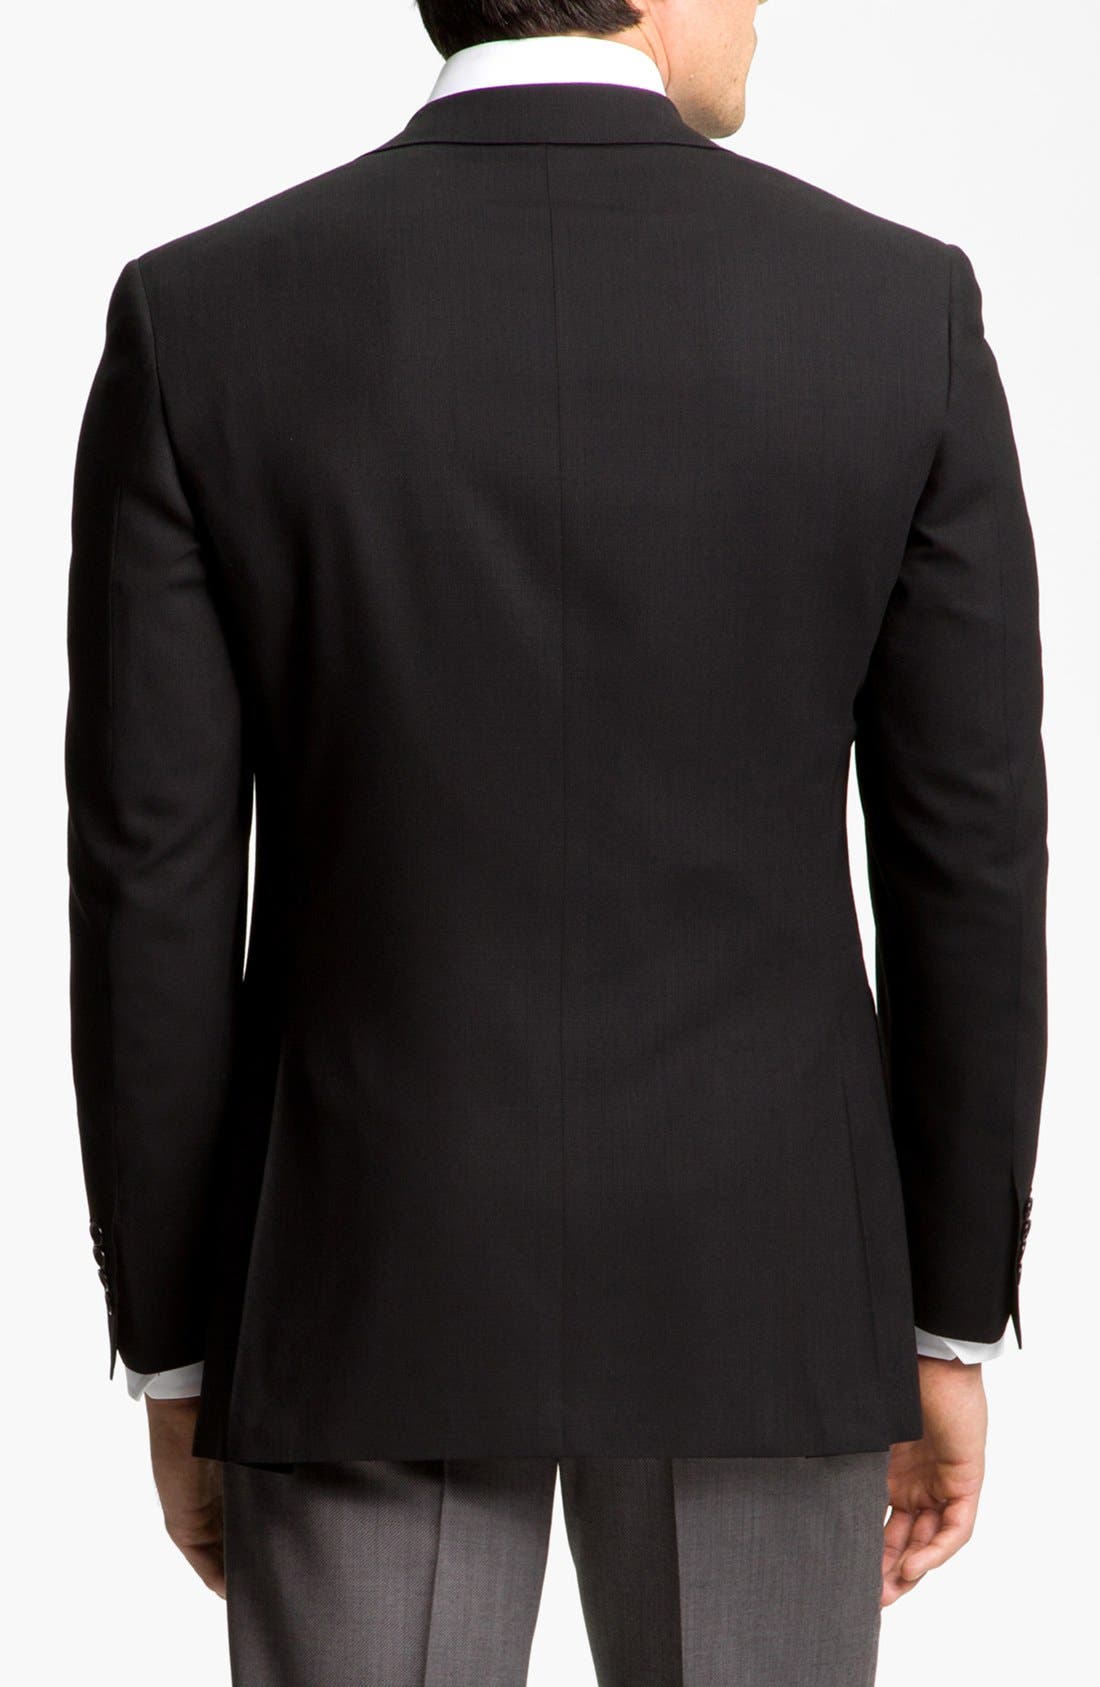 Richard Paul Mens Black Classic Fit Suit Jacket Blazer 36 38 40 42 44 46 48 50 52 54